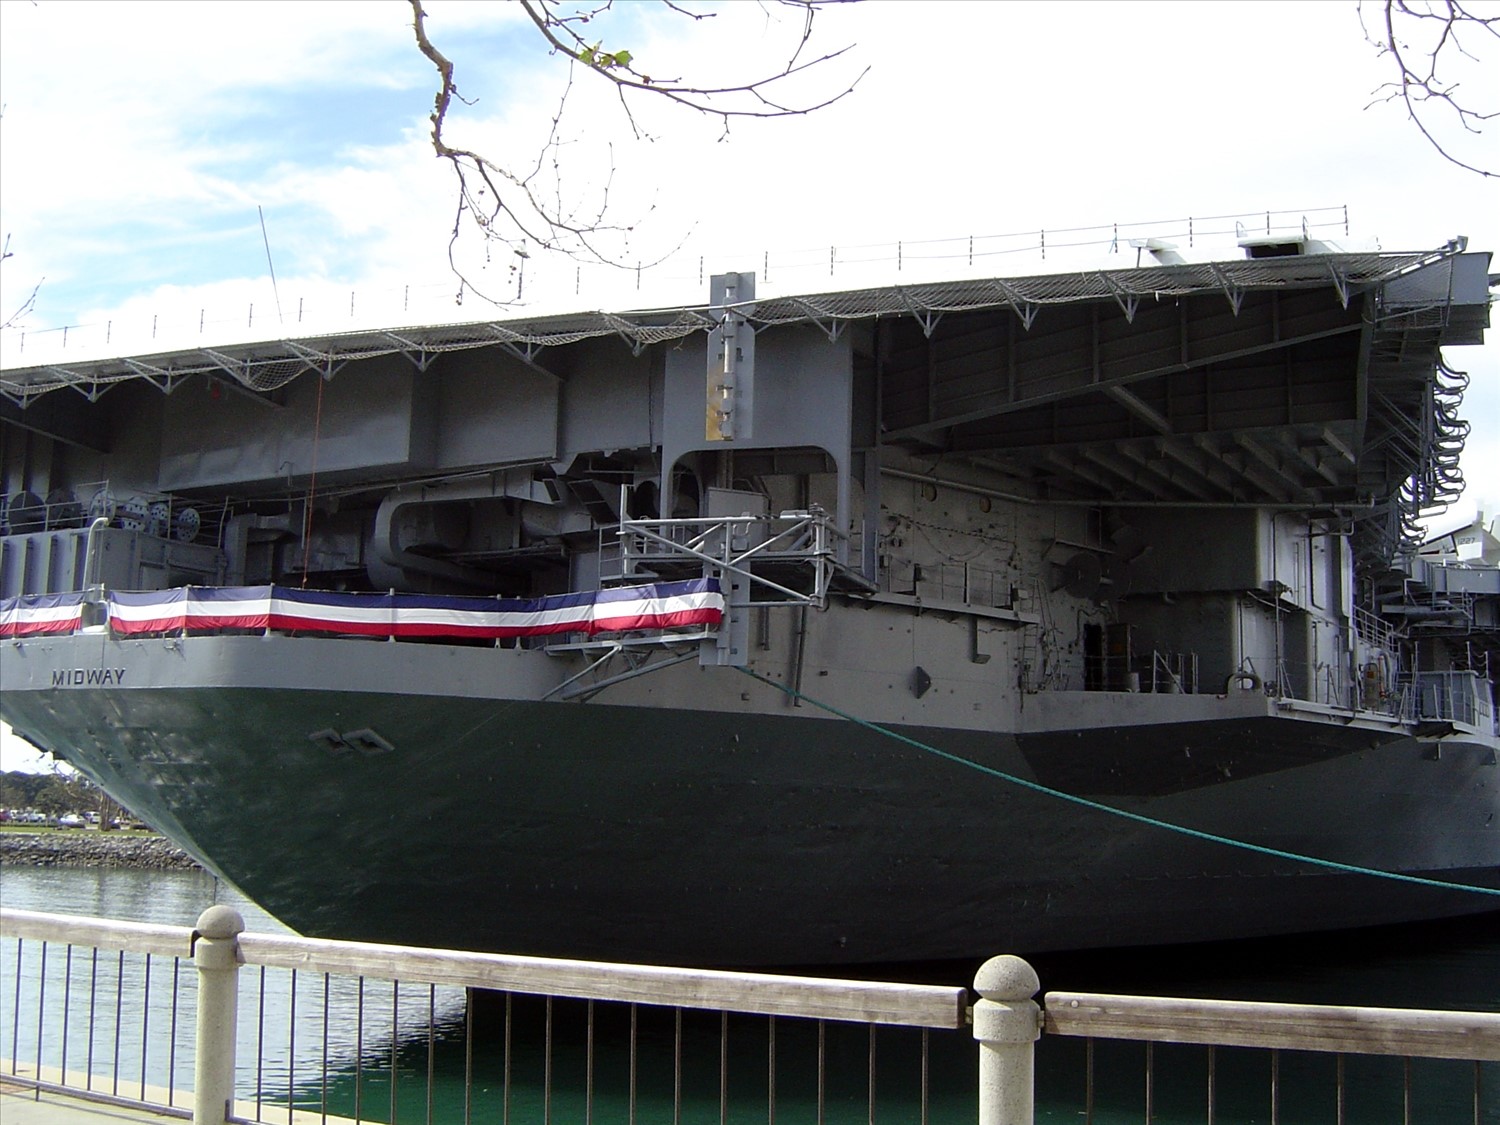 Closer view of an aircraft carrier. DSC00548.jpg. Uploaded by Erik Hoffmann on 2/24/2004. 